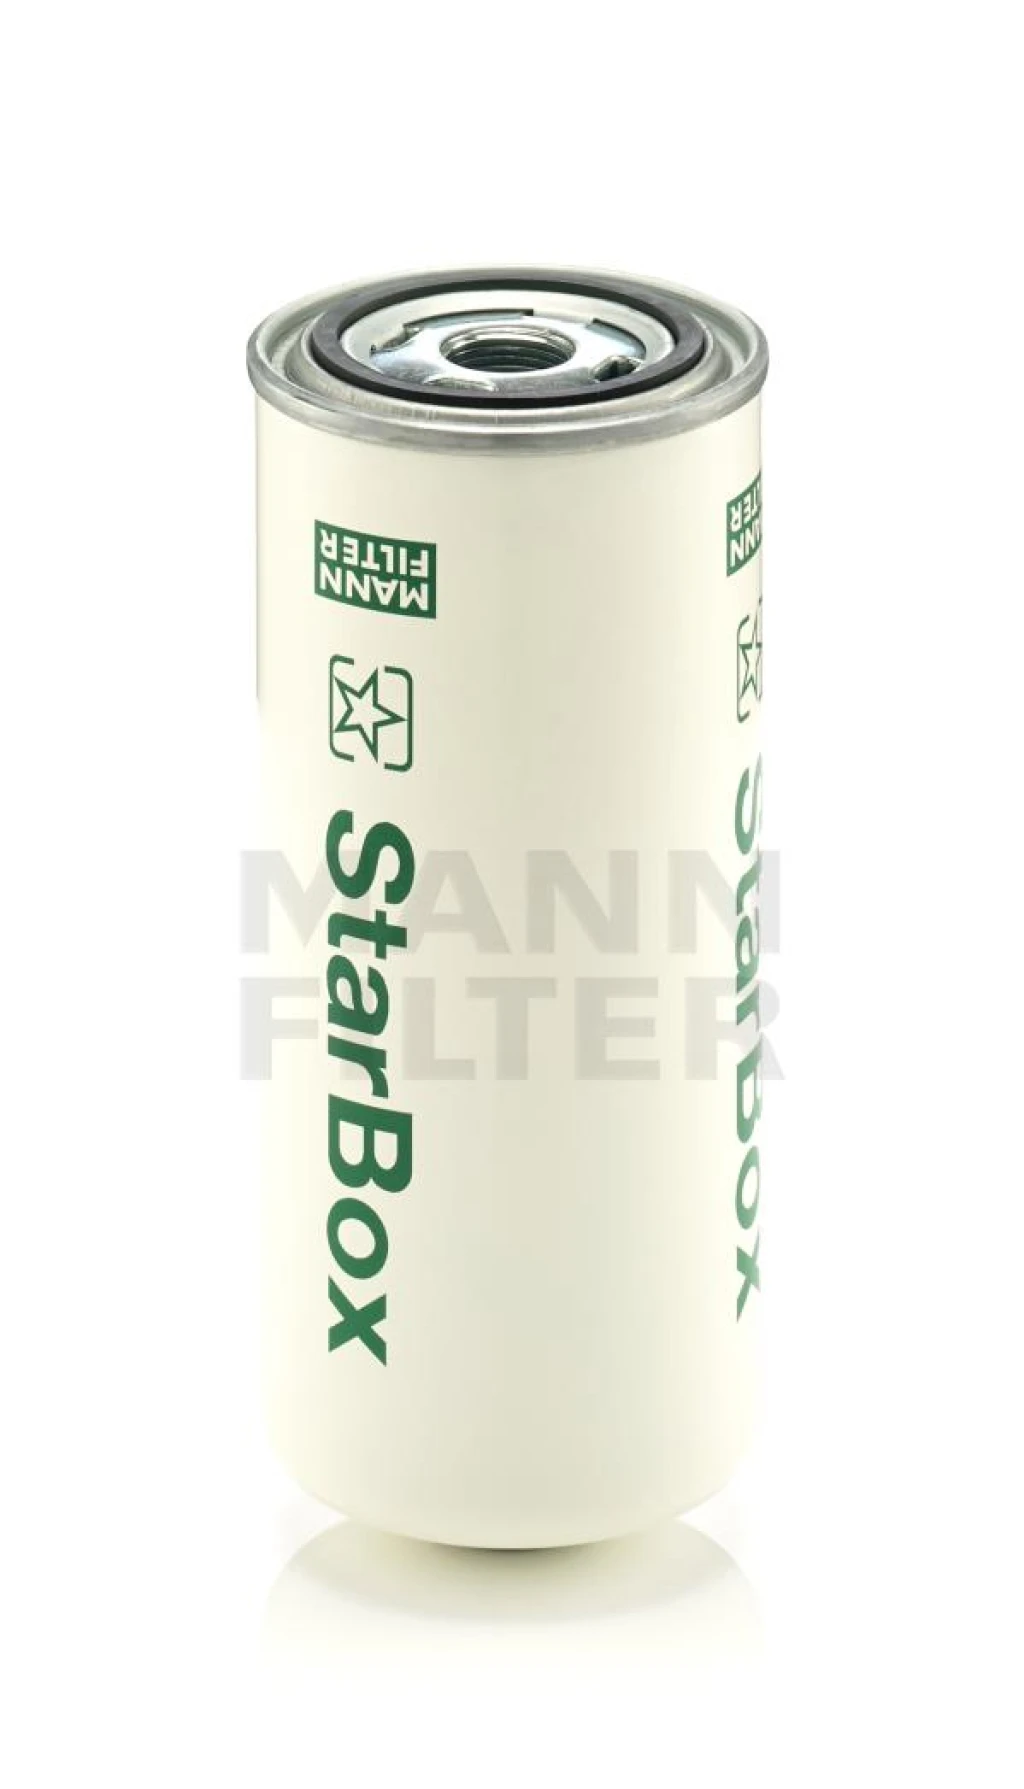 Фильтр очистки сжатого воздуха MANN-FILTER LB962/2